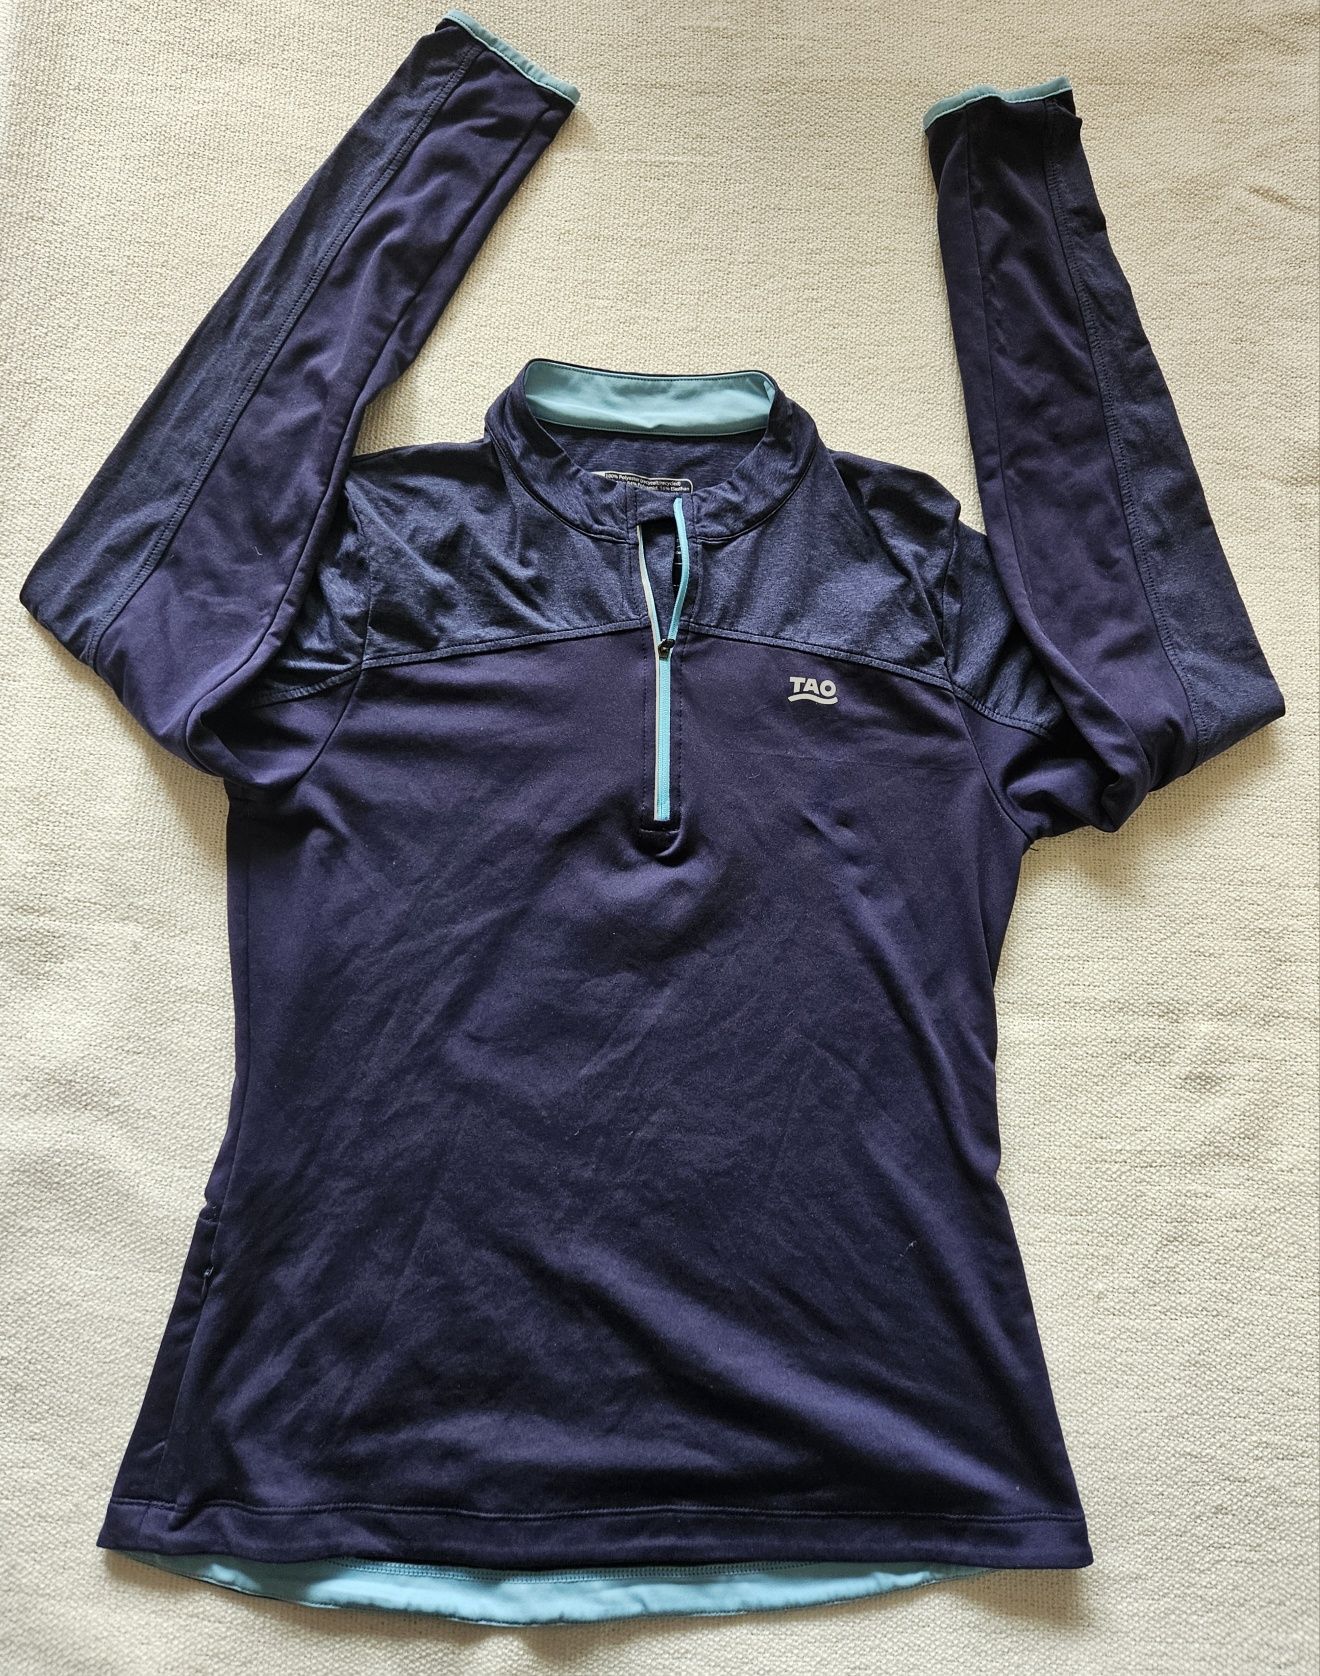 Bluza termoaktywna, termiczna, trekkingowa firmy Tao rozm. 40/42